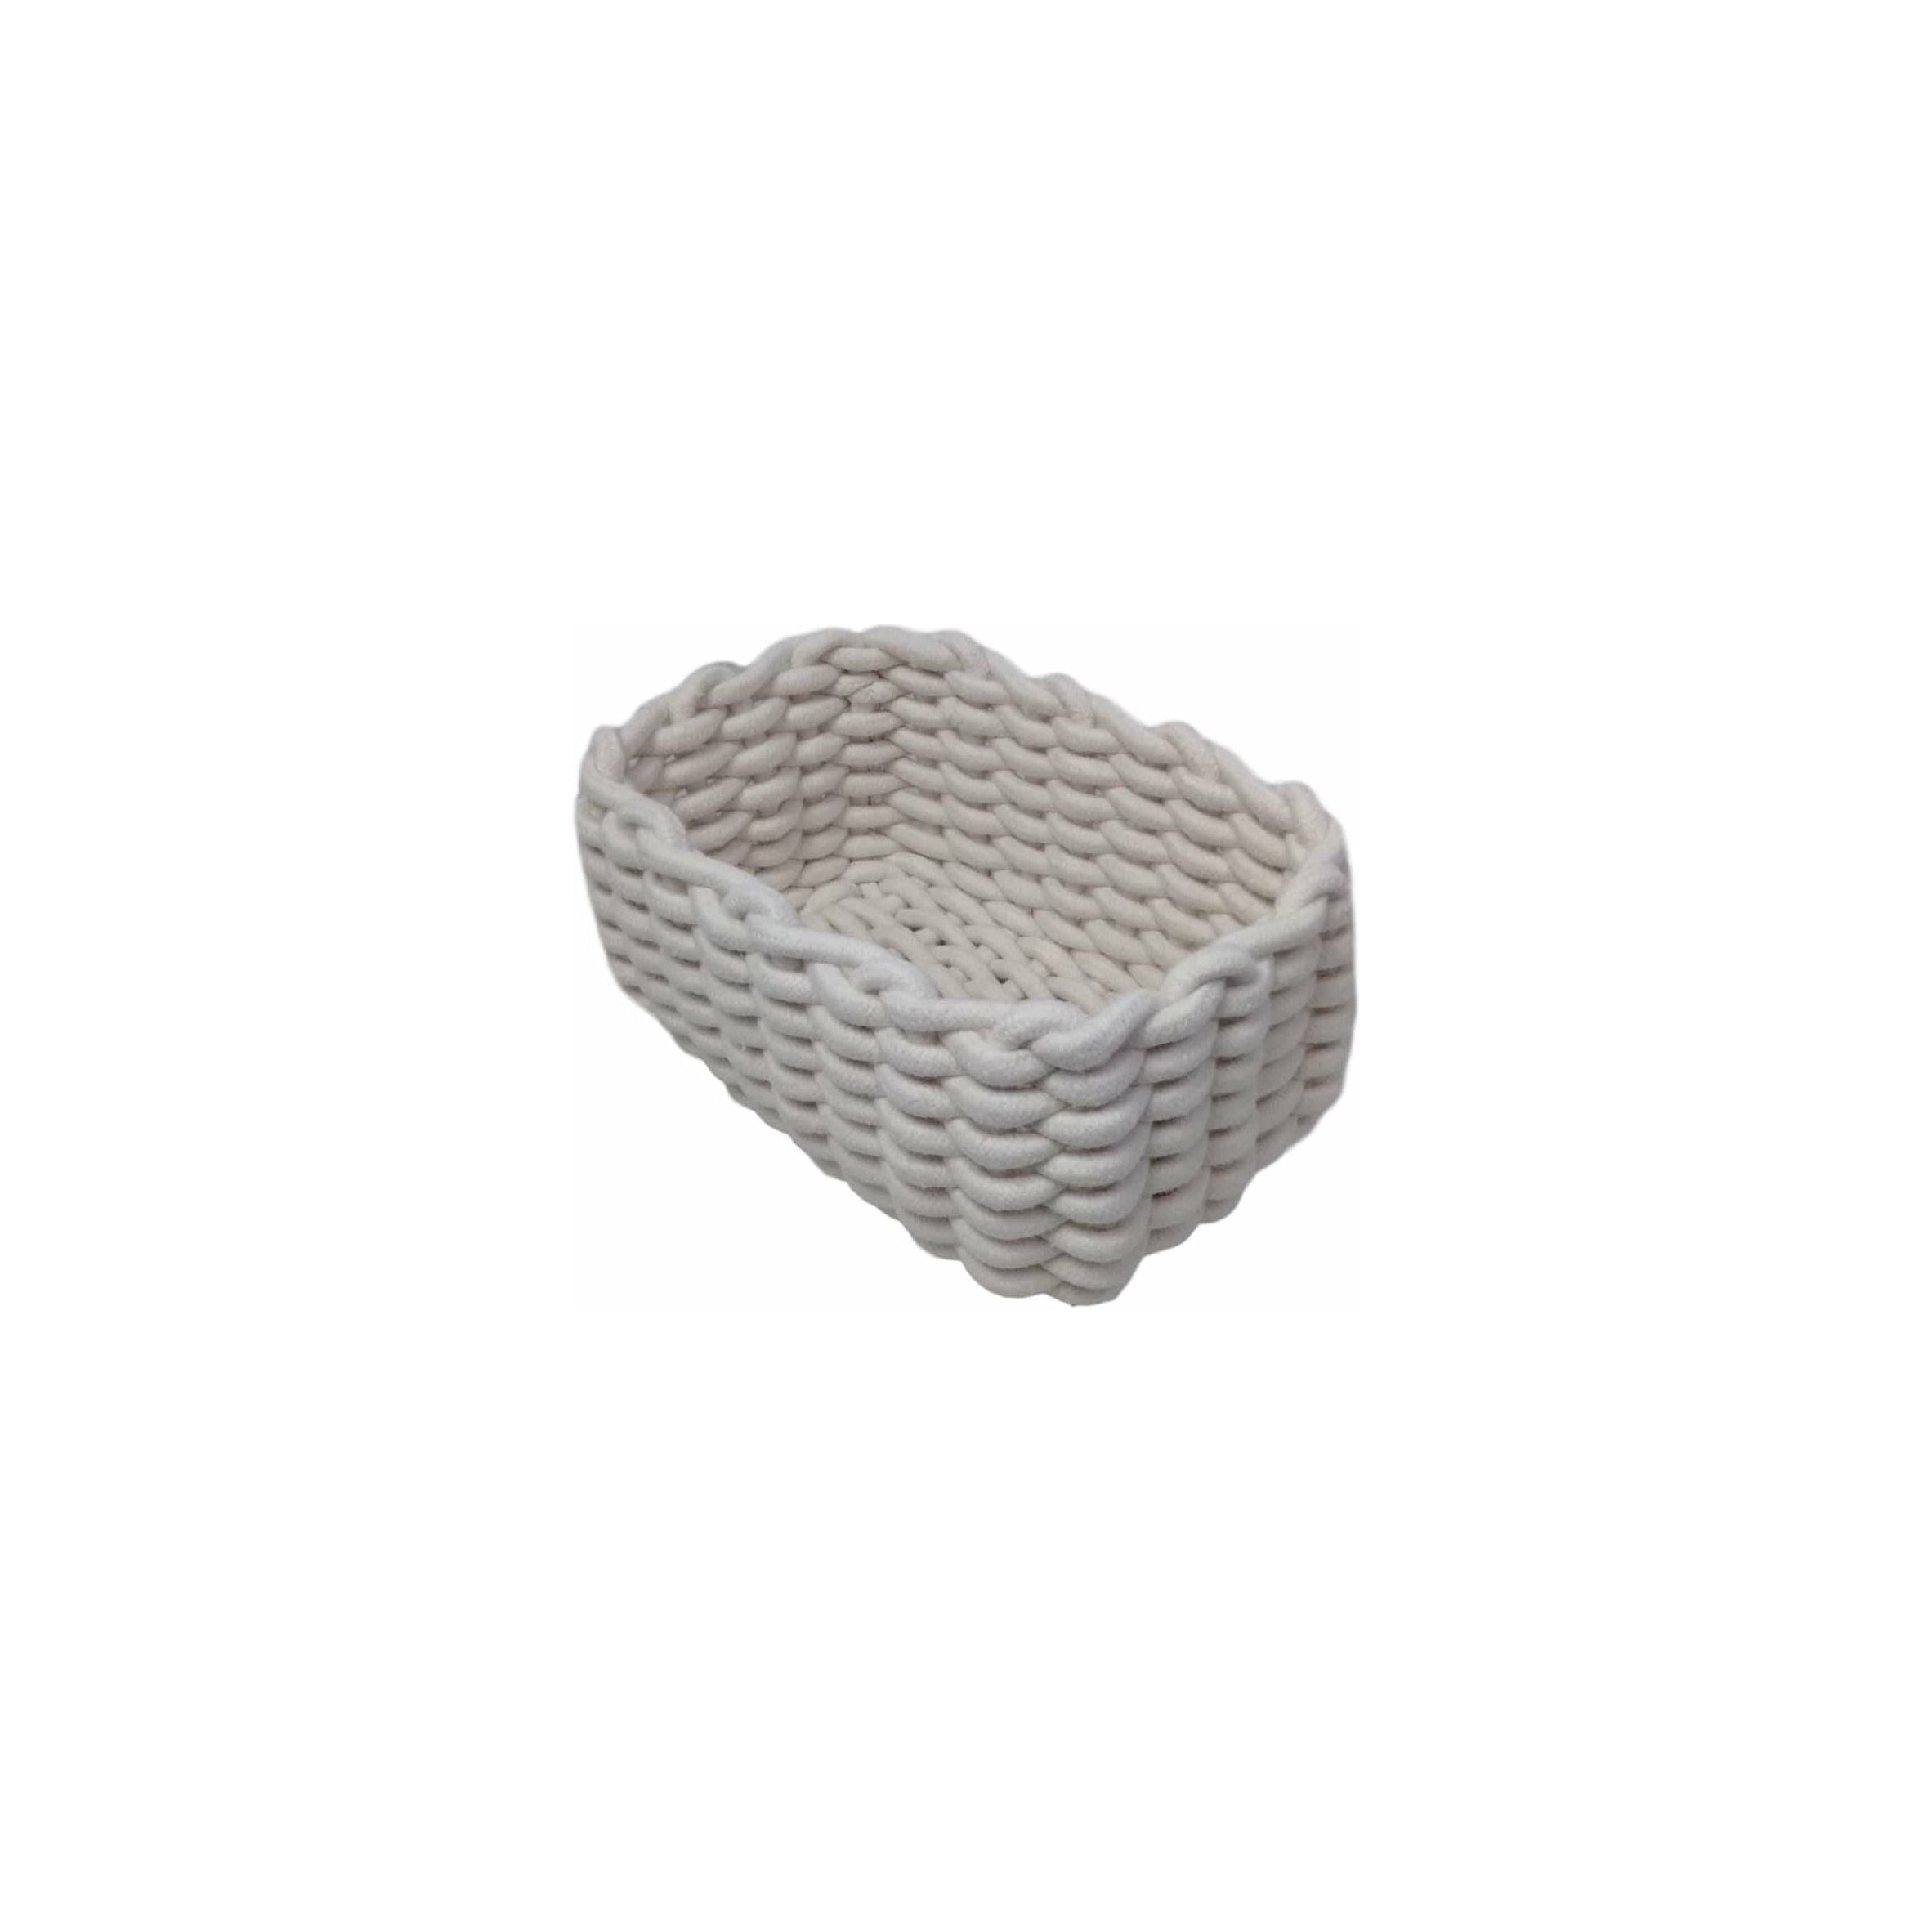 Cotton Rope Storage Basket Grey or Cream - Dollars and Sense